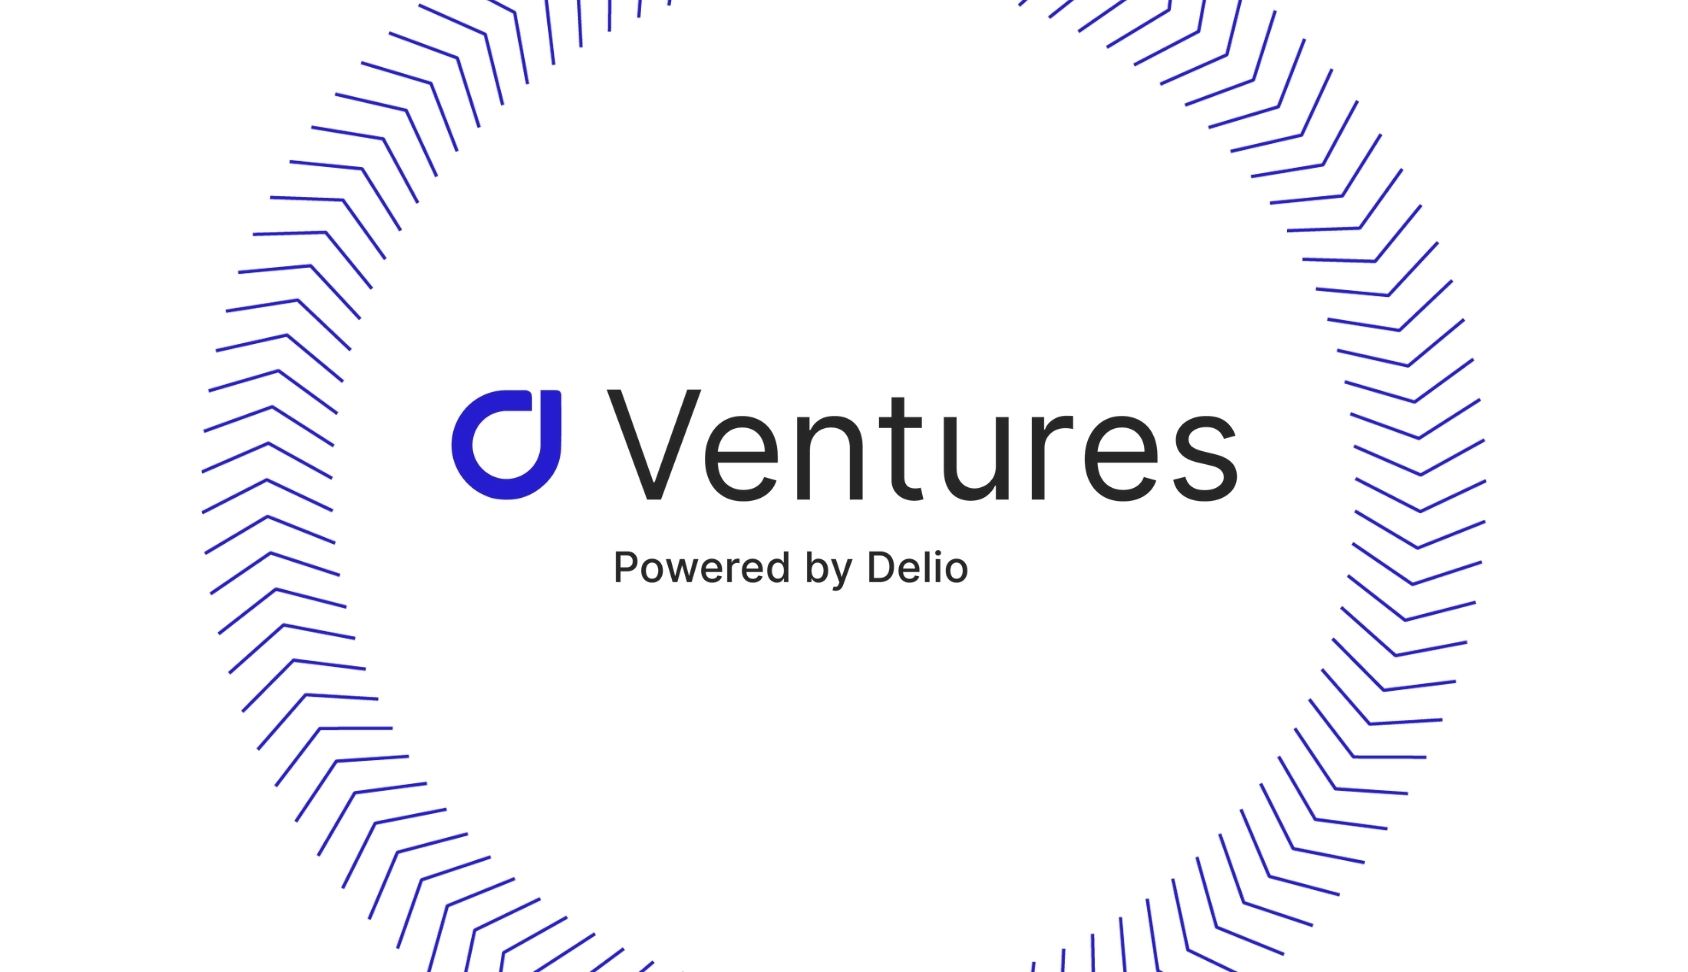 Delio launches Ventures initiative for alternative asset marketplaces